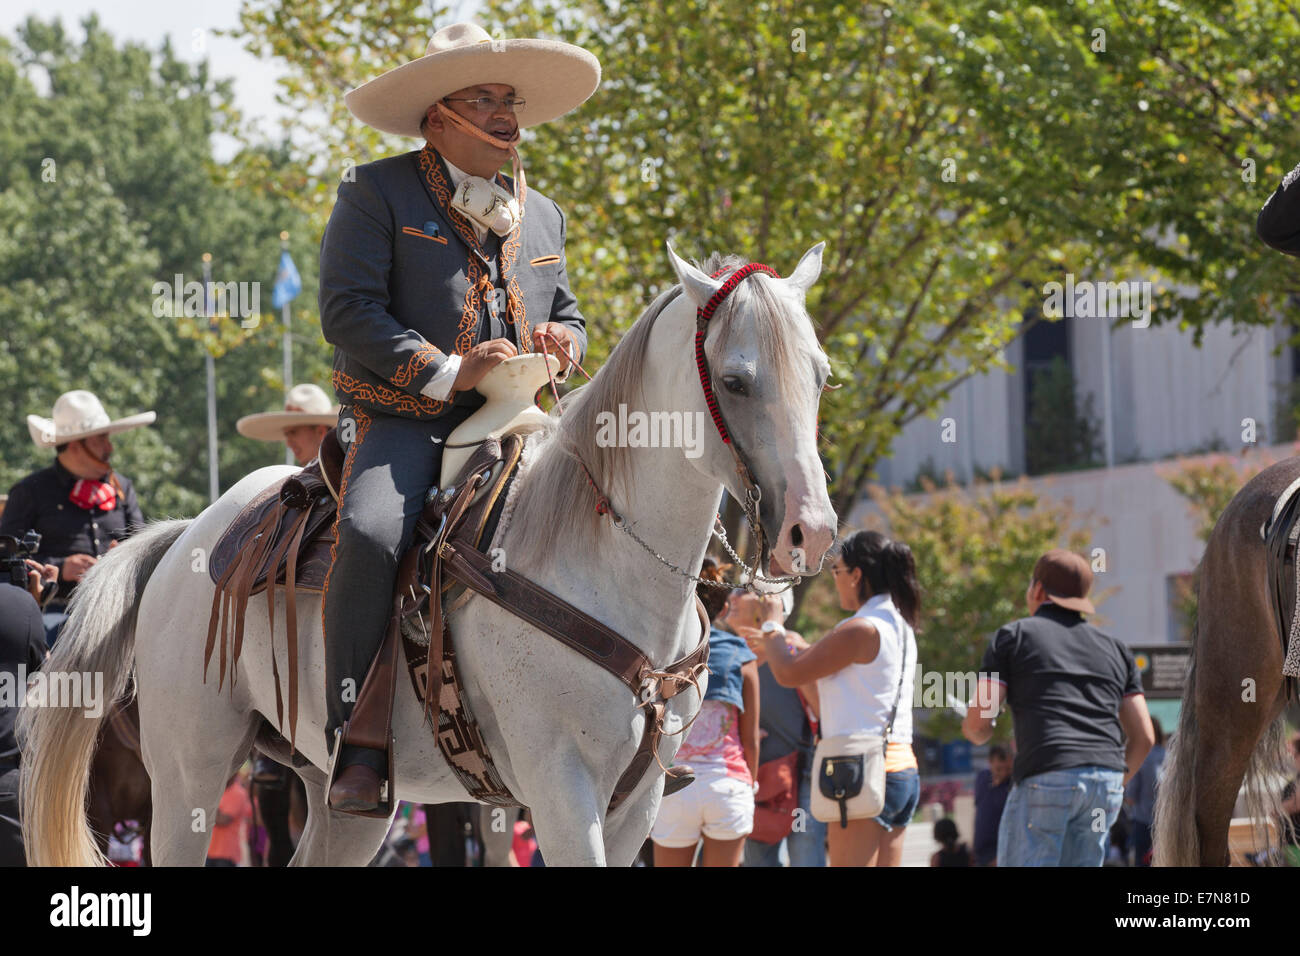 Mexican vaquero (cowboy) on horseback at the Latin festival - Washington, DC USA Stock Photo